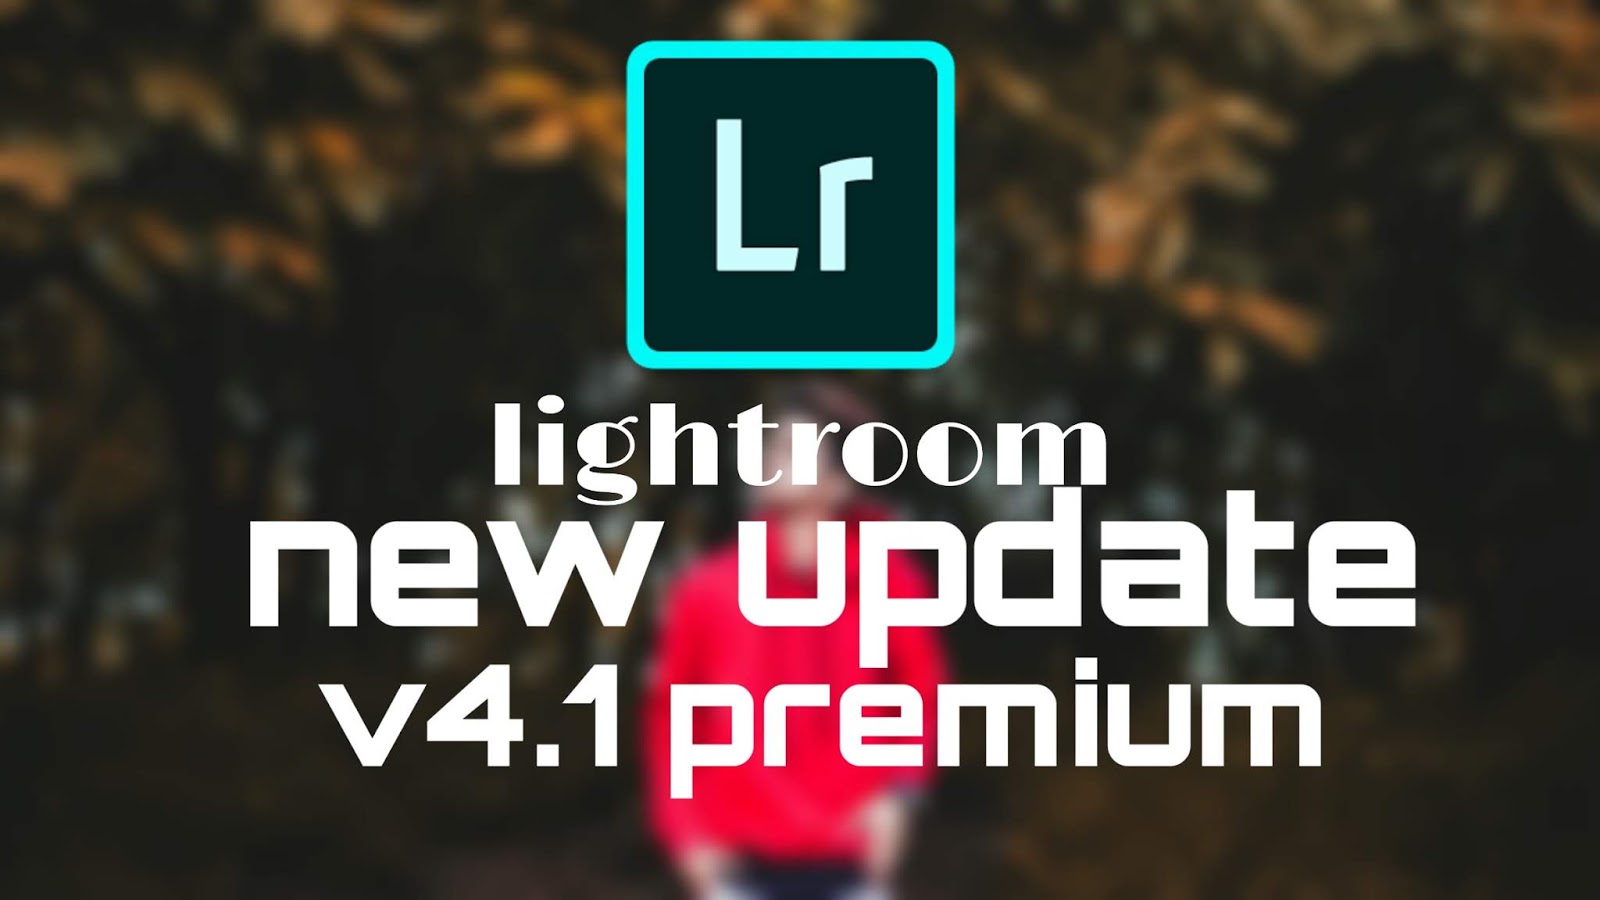 Lightroom premium apk v4.1 [new update] download